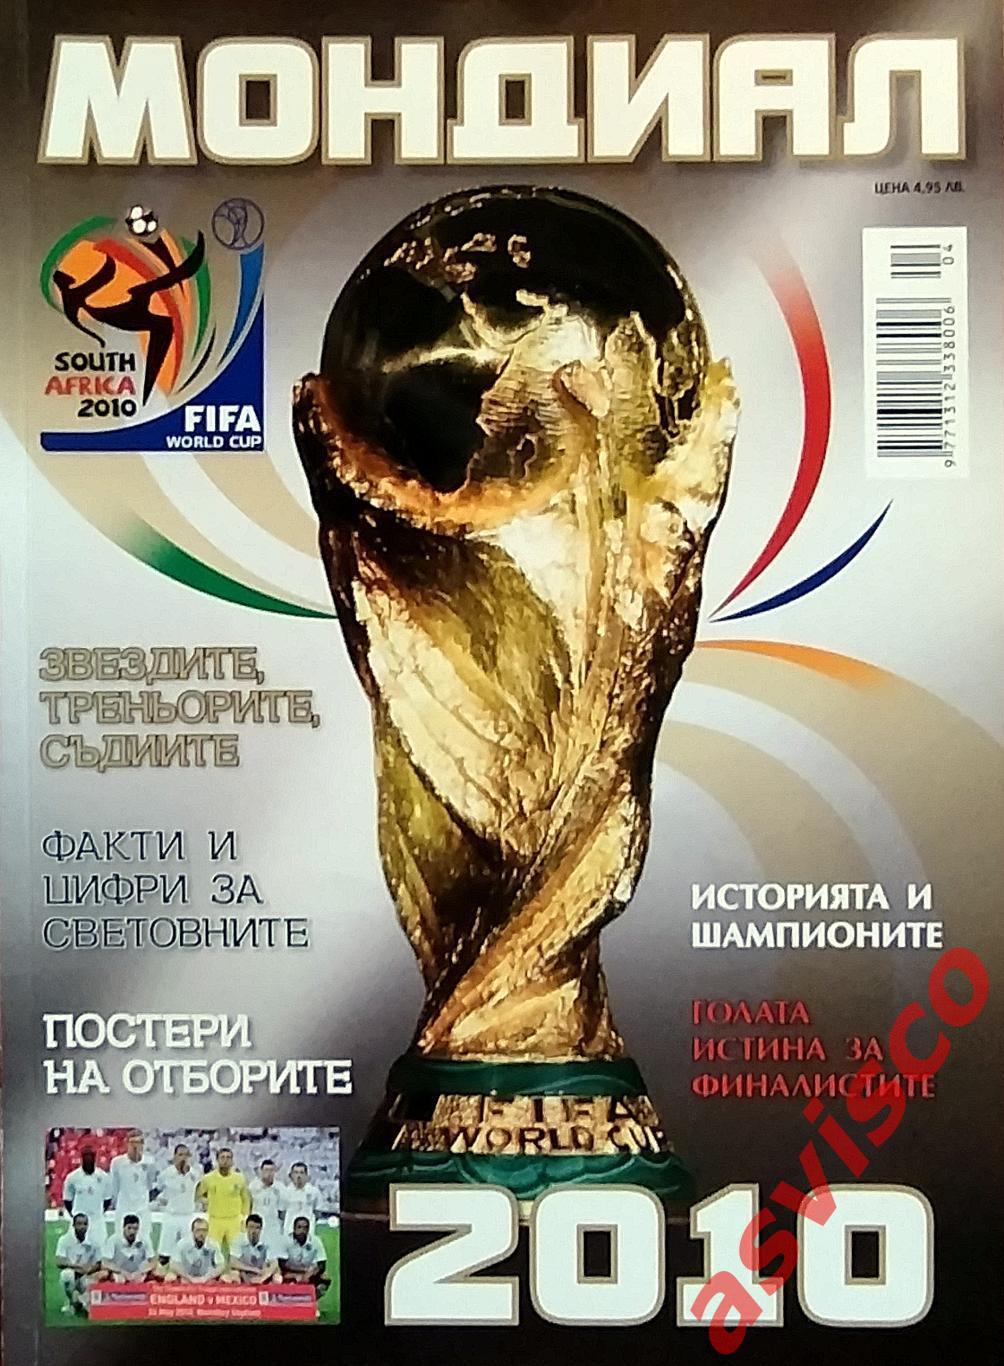 Чемпионат Мира по футболу в ЮАР 2010 года. Представление участниц. 6